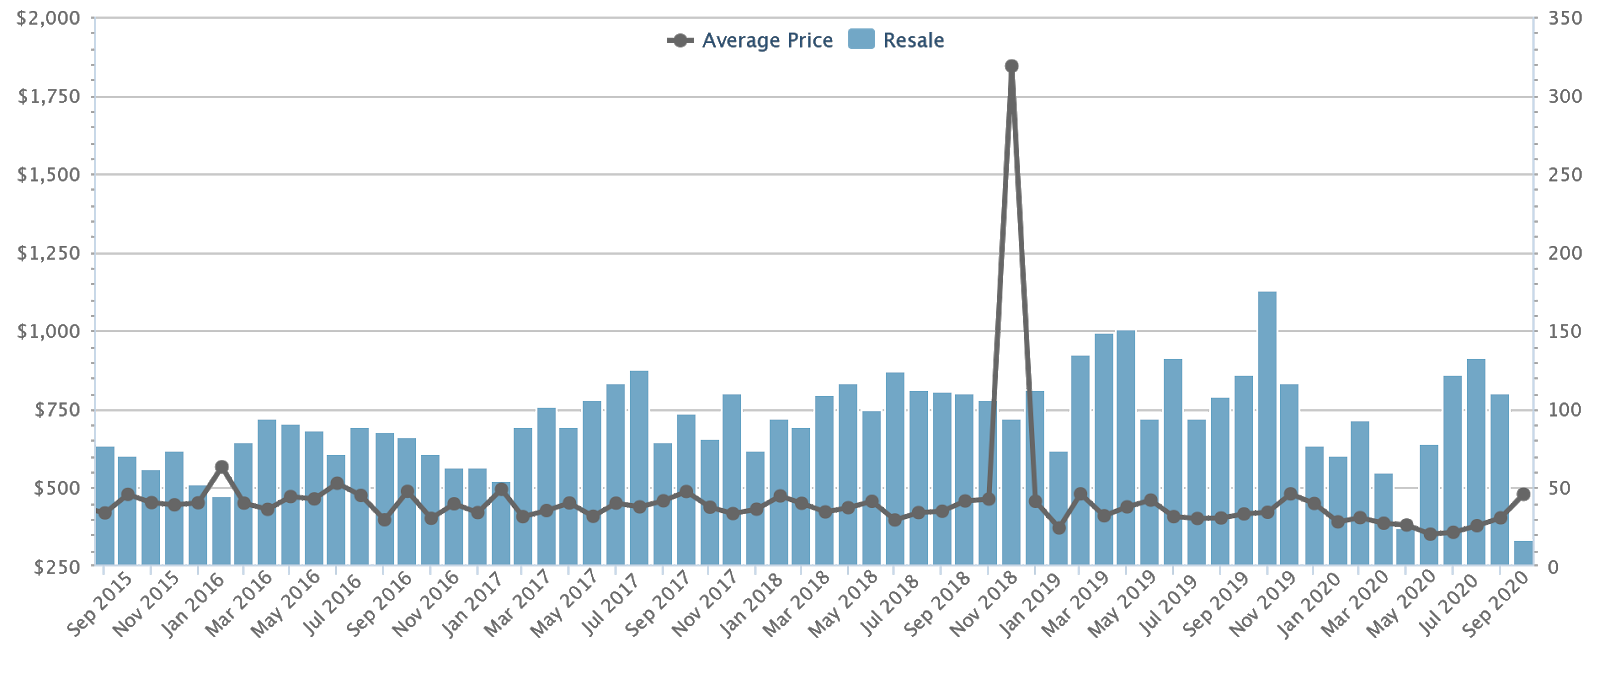 industrial property price appreciation